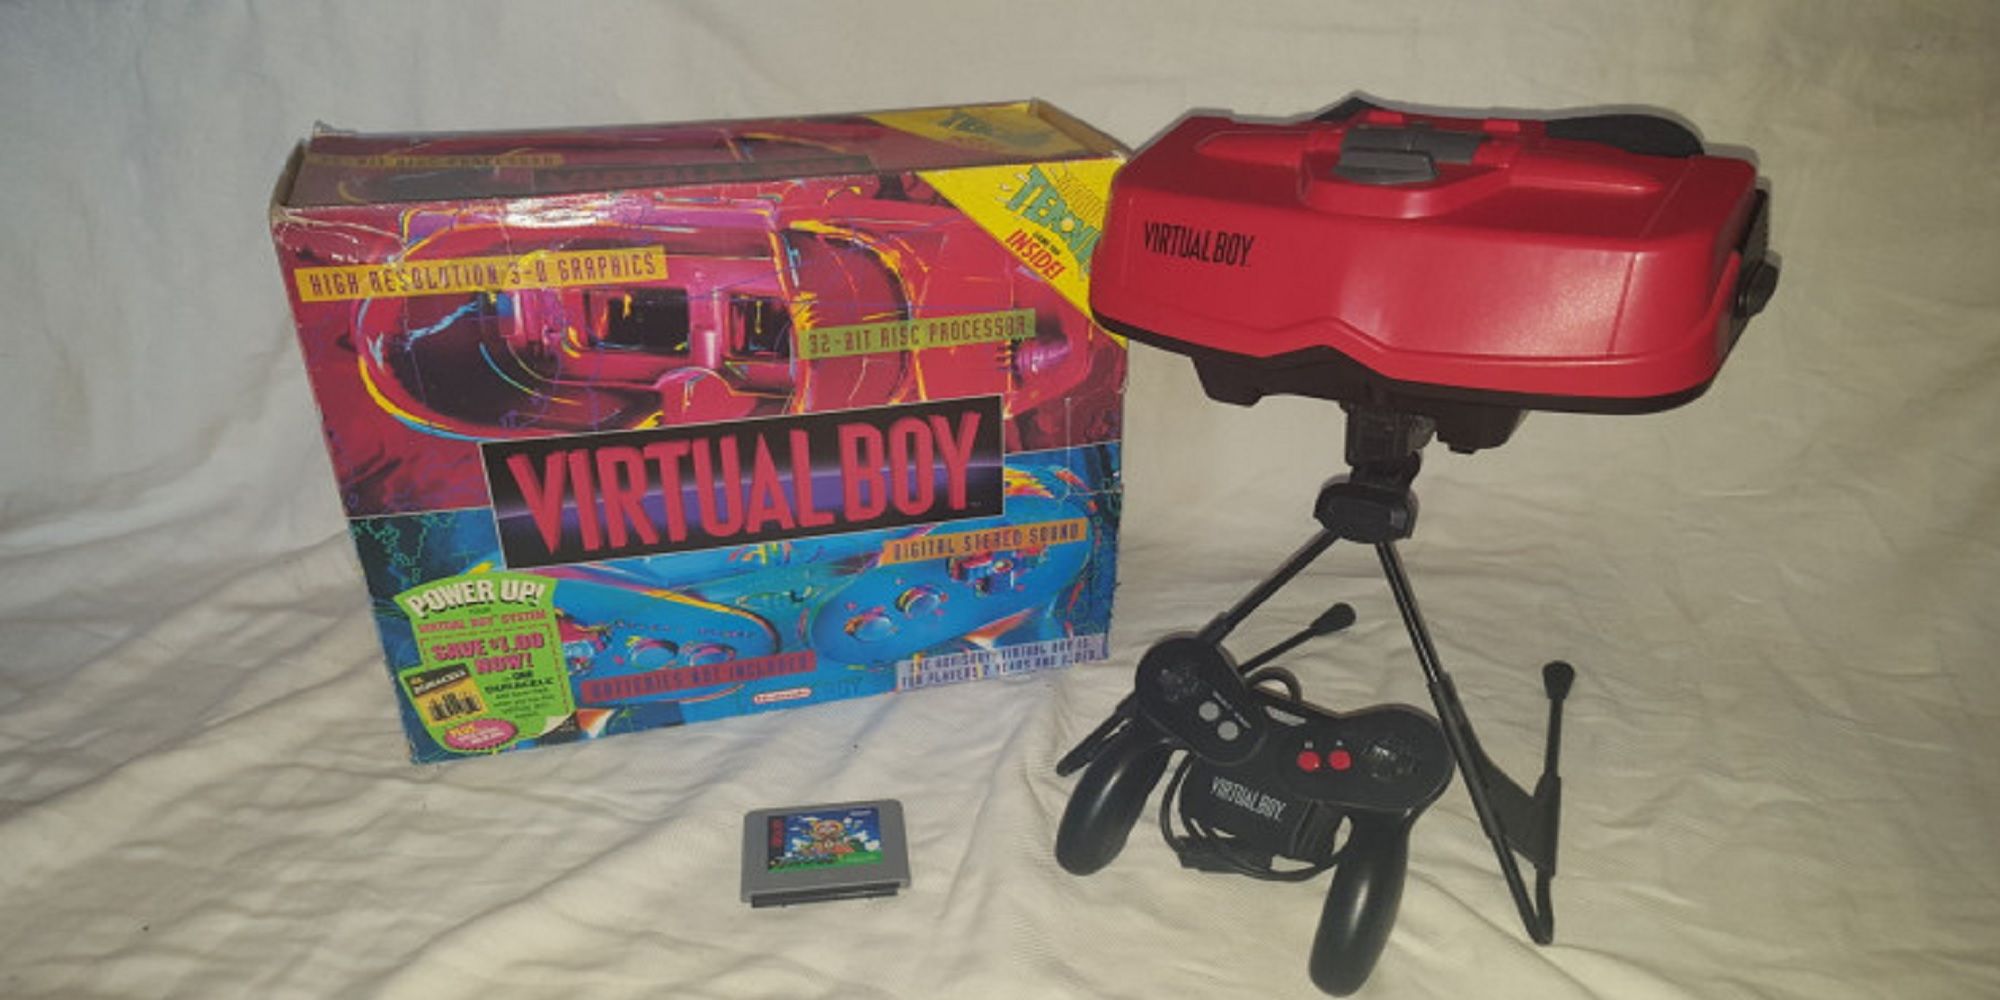 Consola Virtual Boy de Nintendo